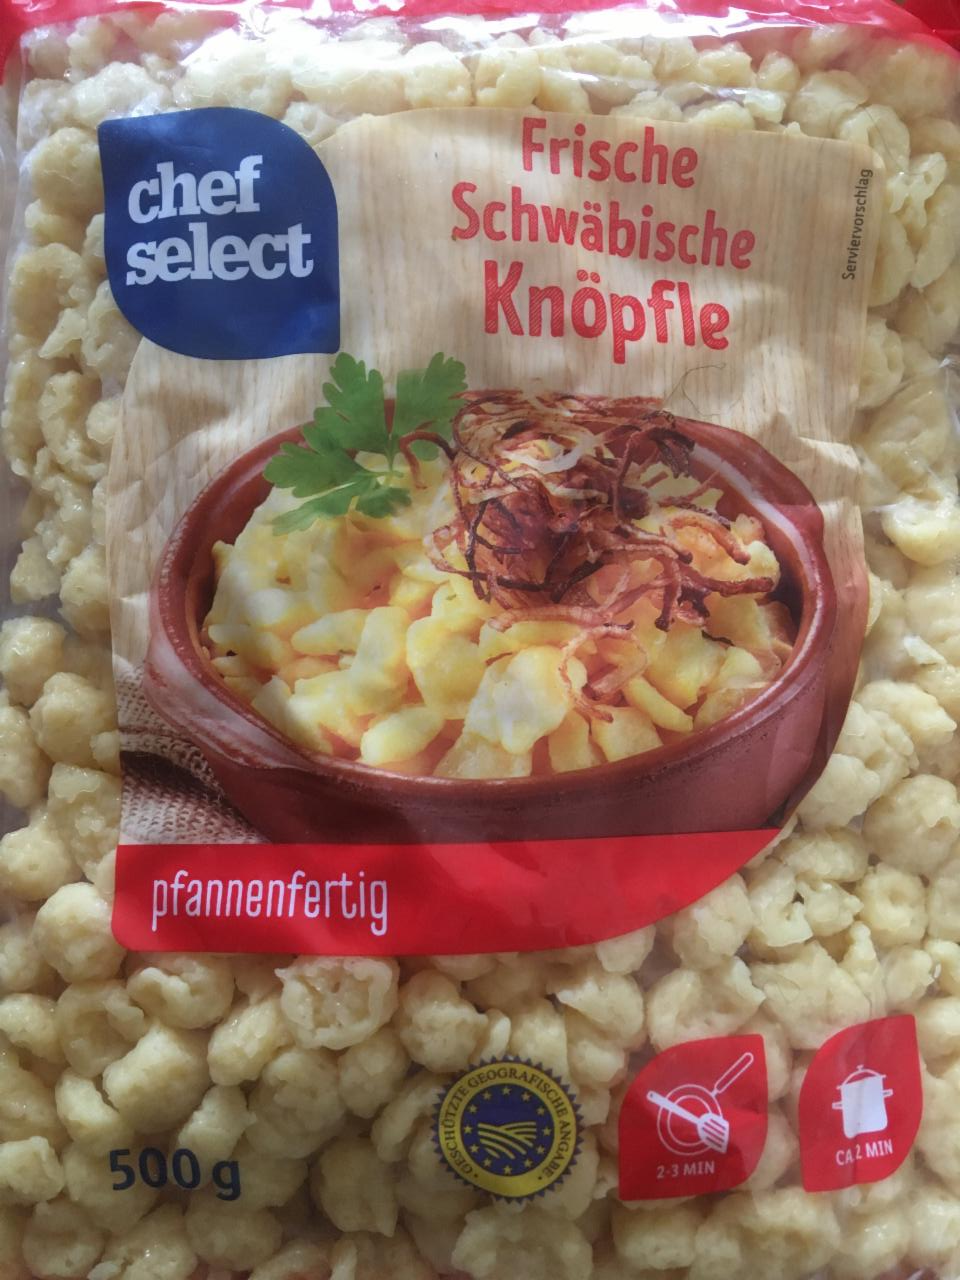 Fotografie - Frische Schwäbische Knöpfle Chef select